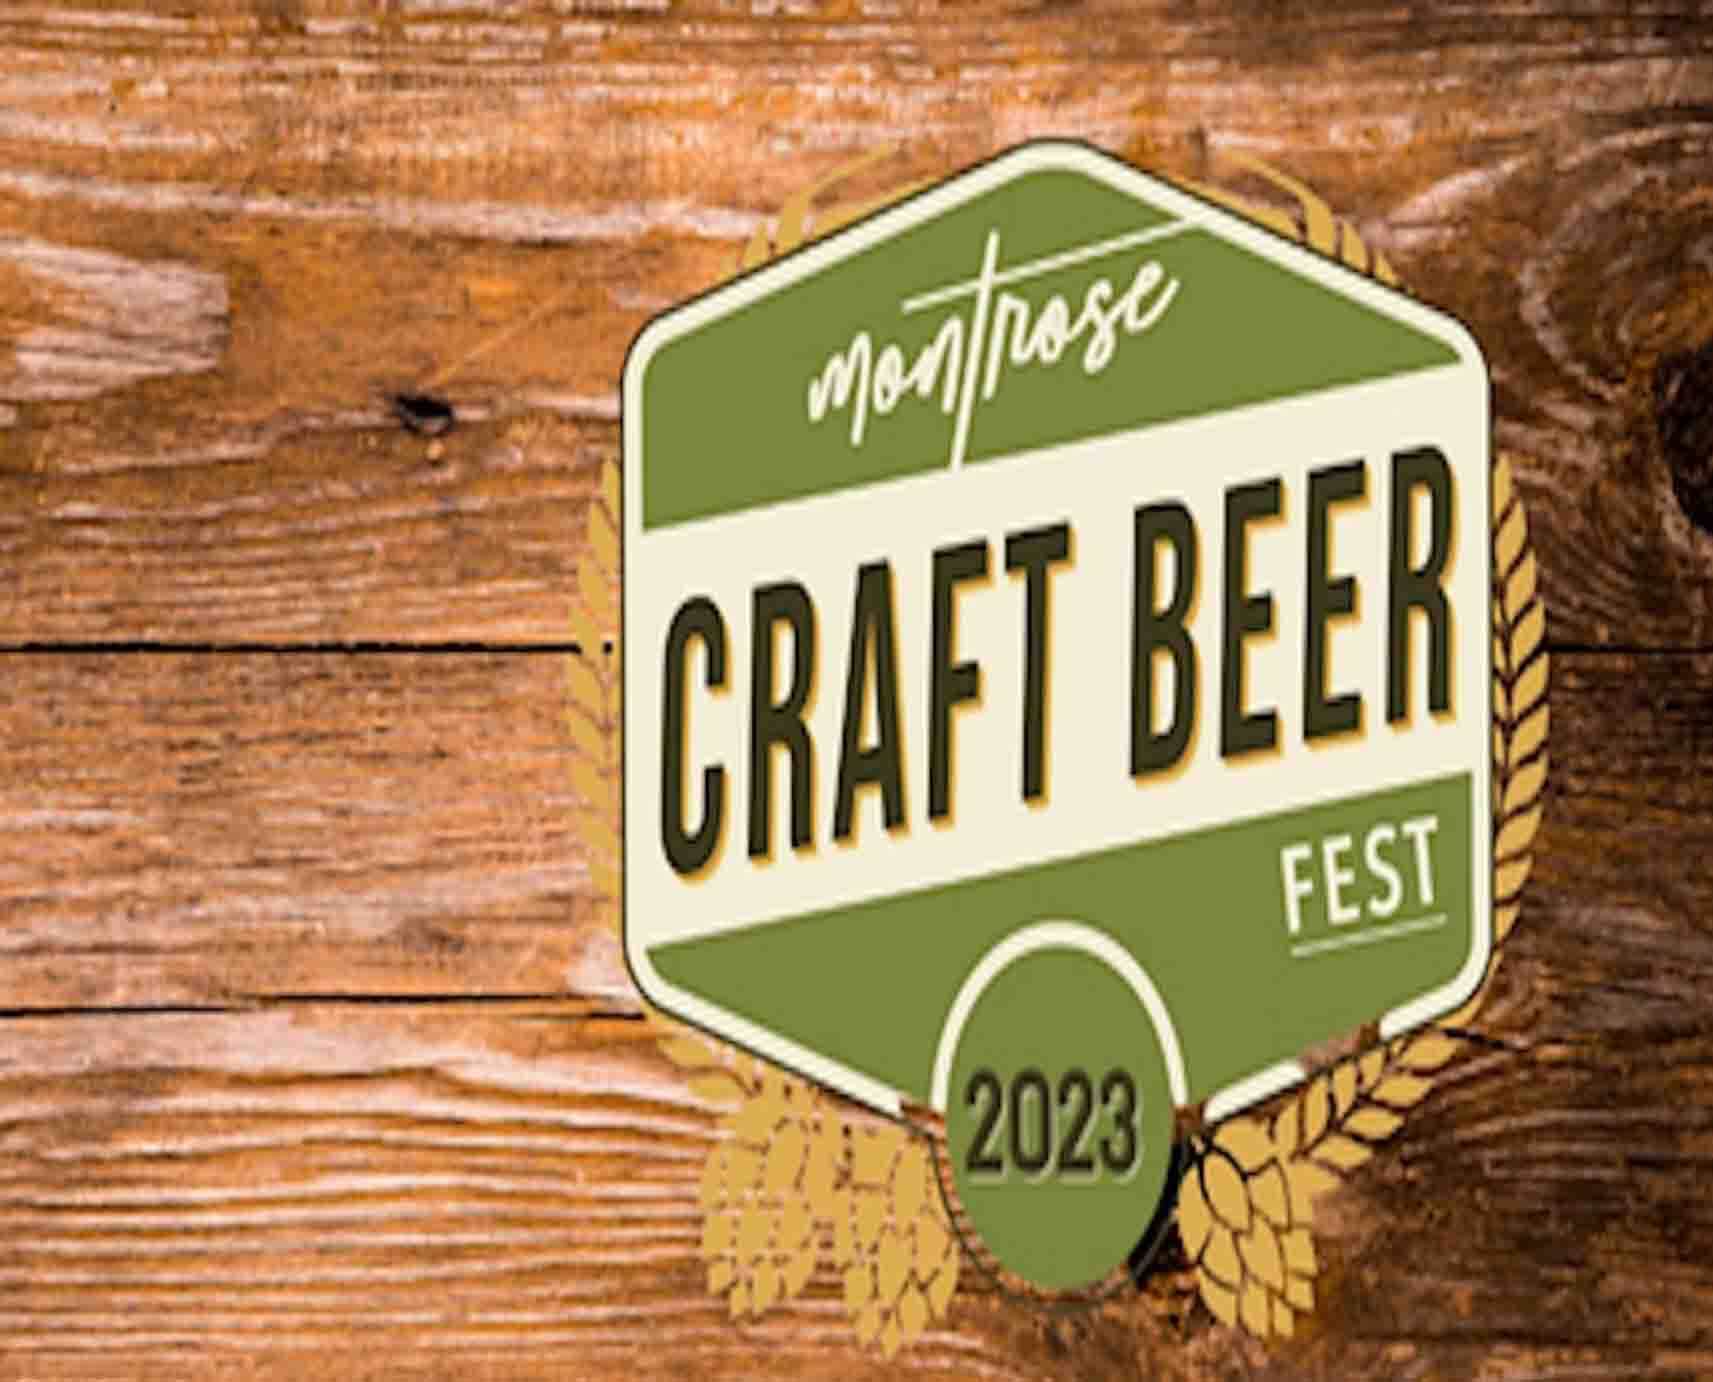 Montrose Craft Beer Fest 2023